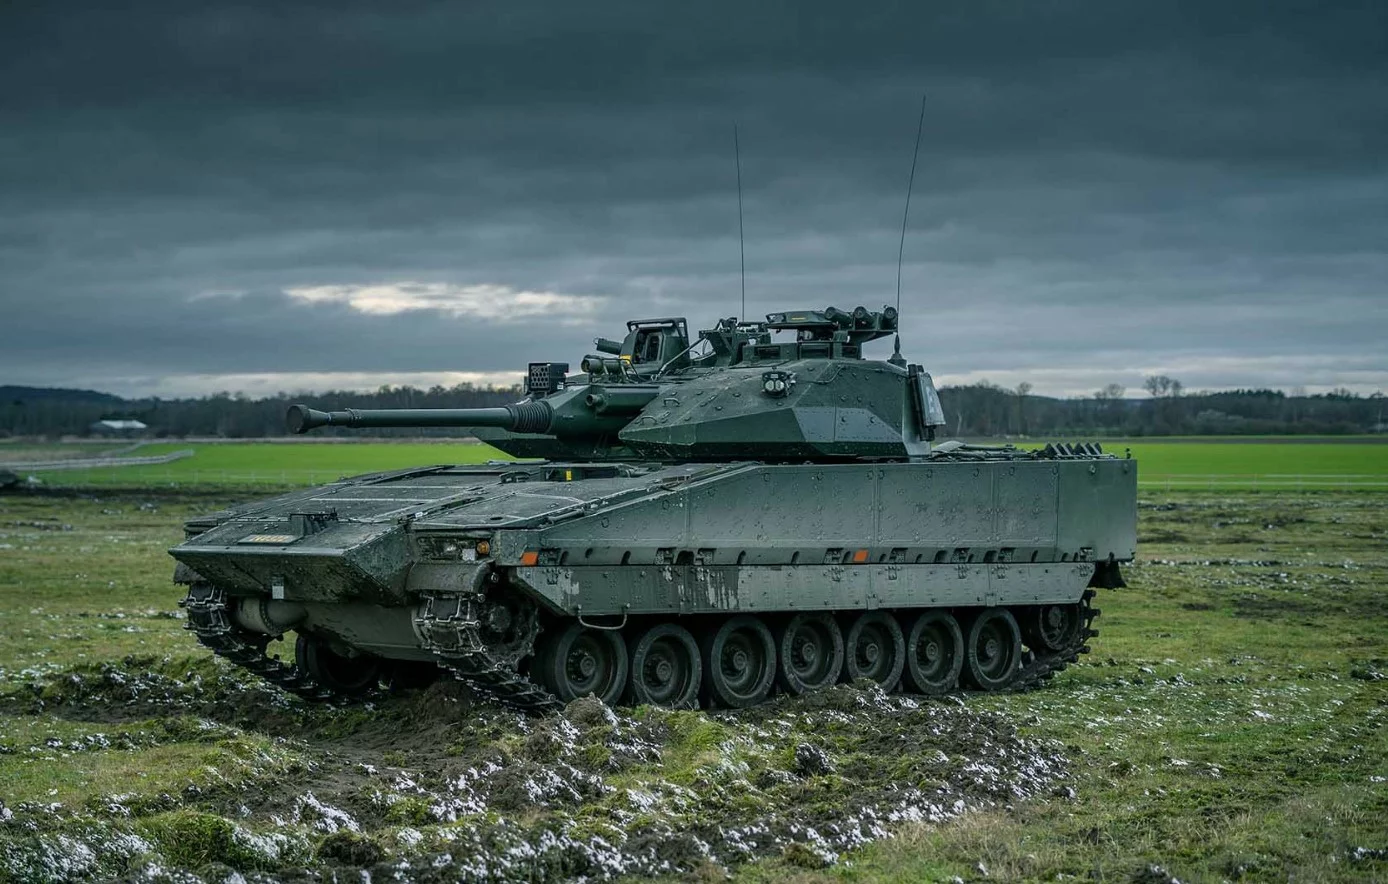 República Tcheca adquire 246 MBT CV90 MkIV